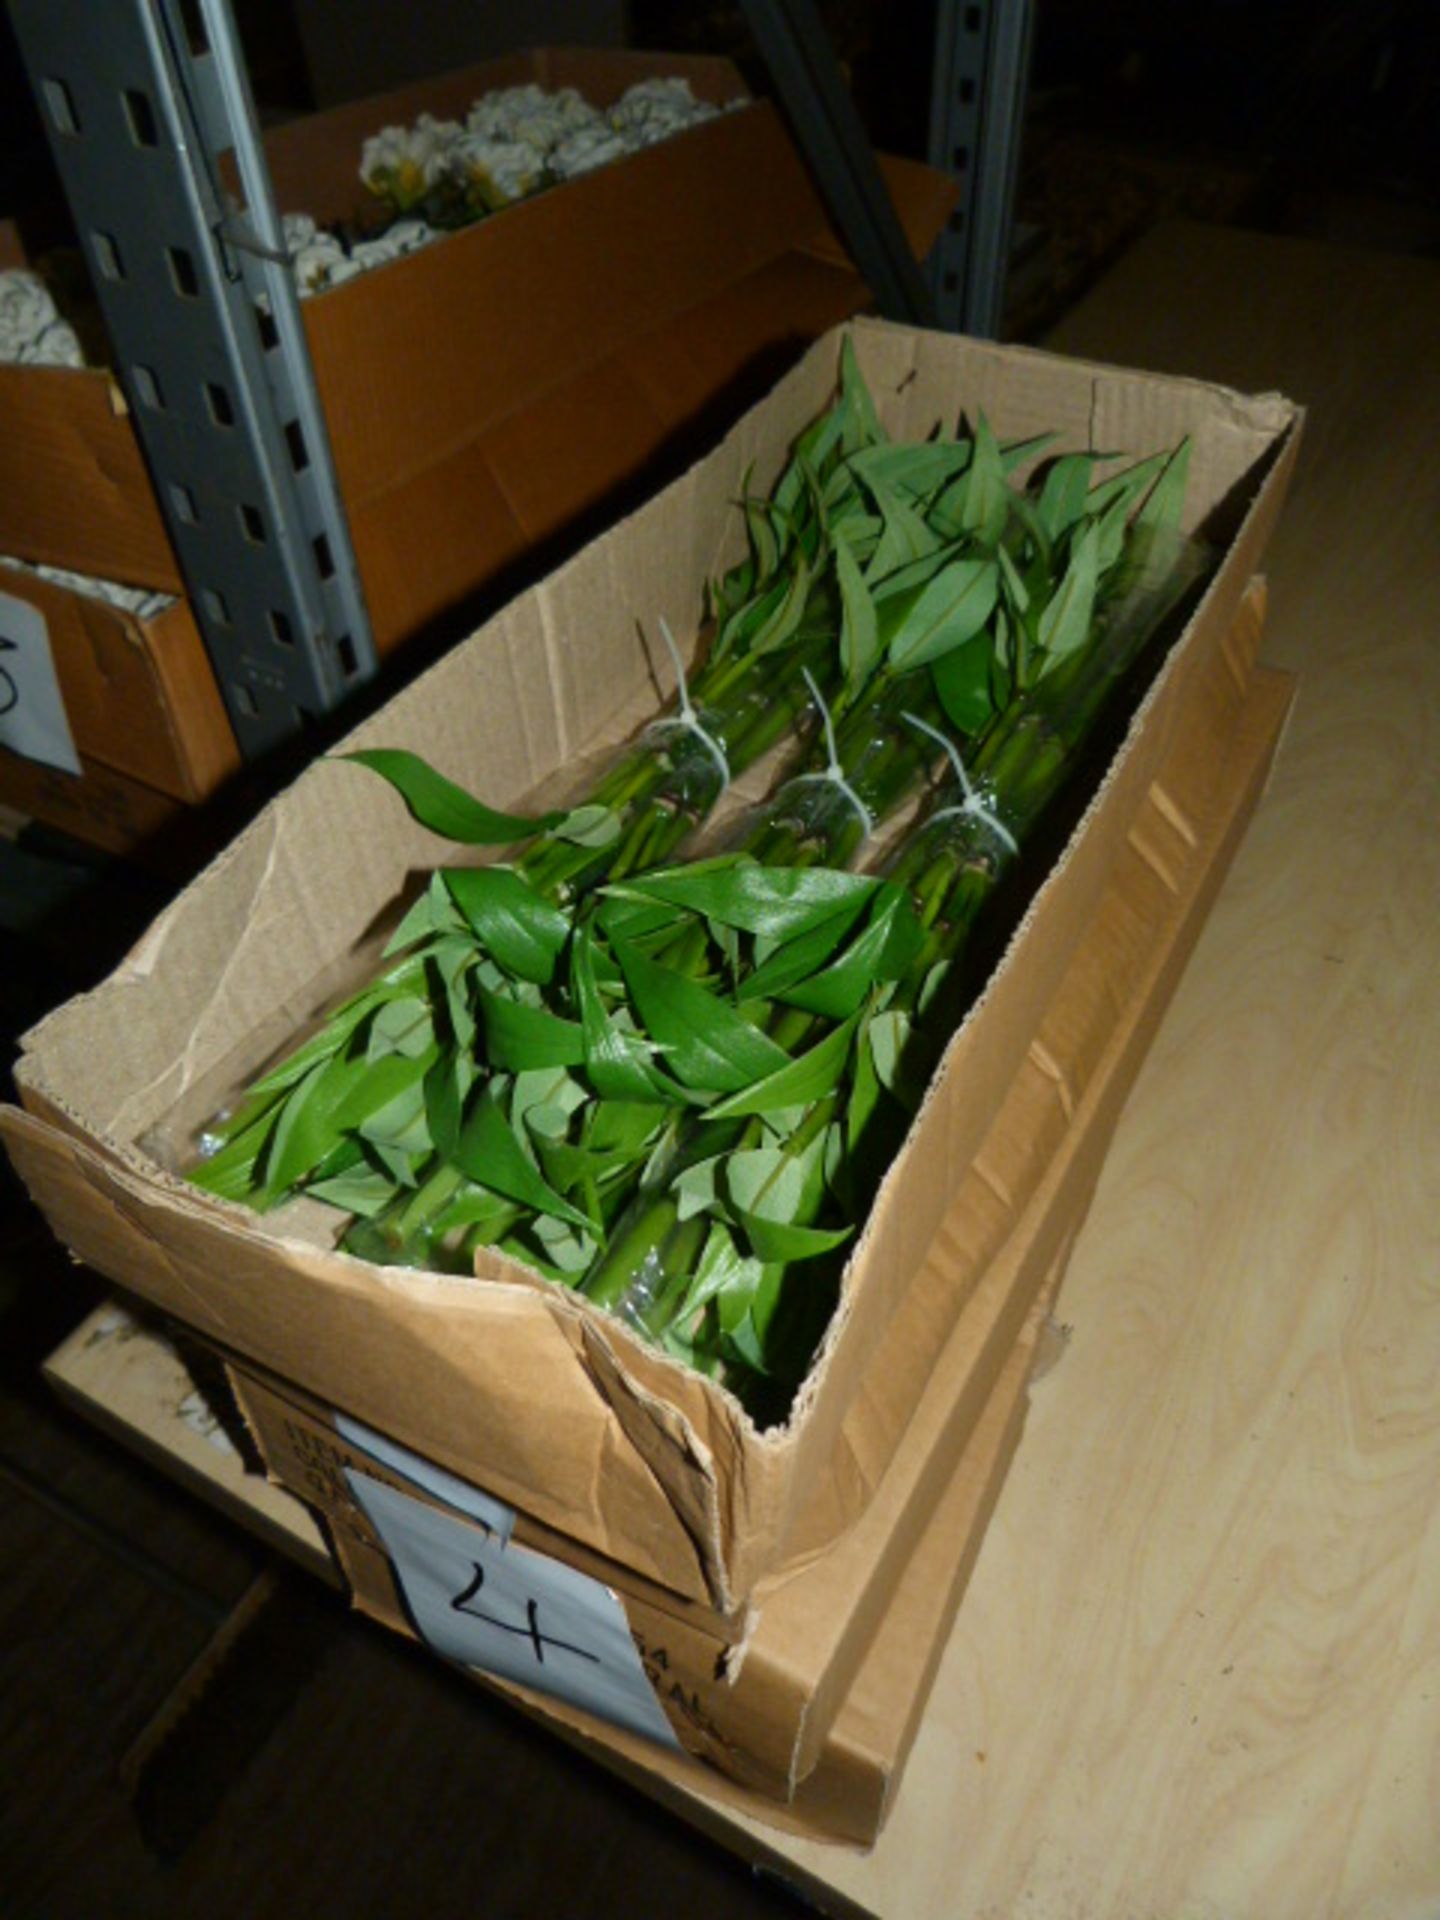 *Four Boxes Containing 3 Dozen Bunches of Artificial Bamboo